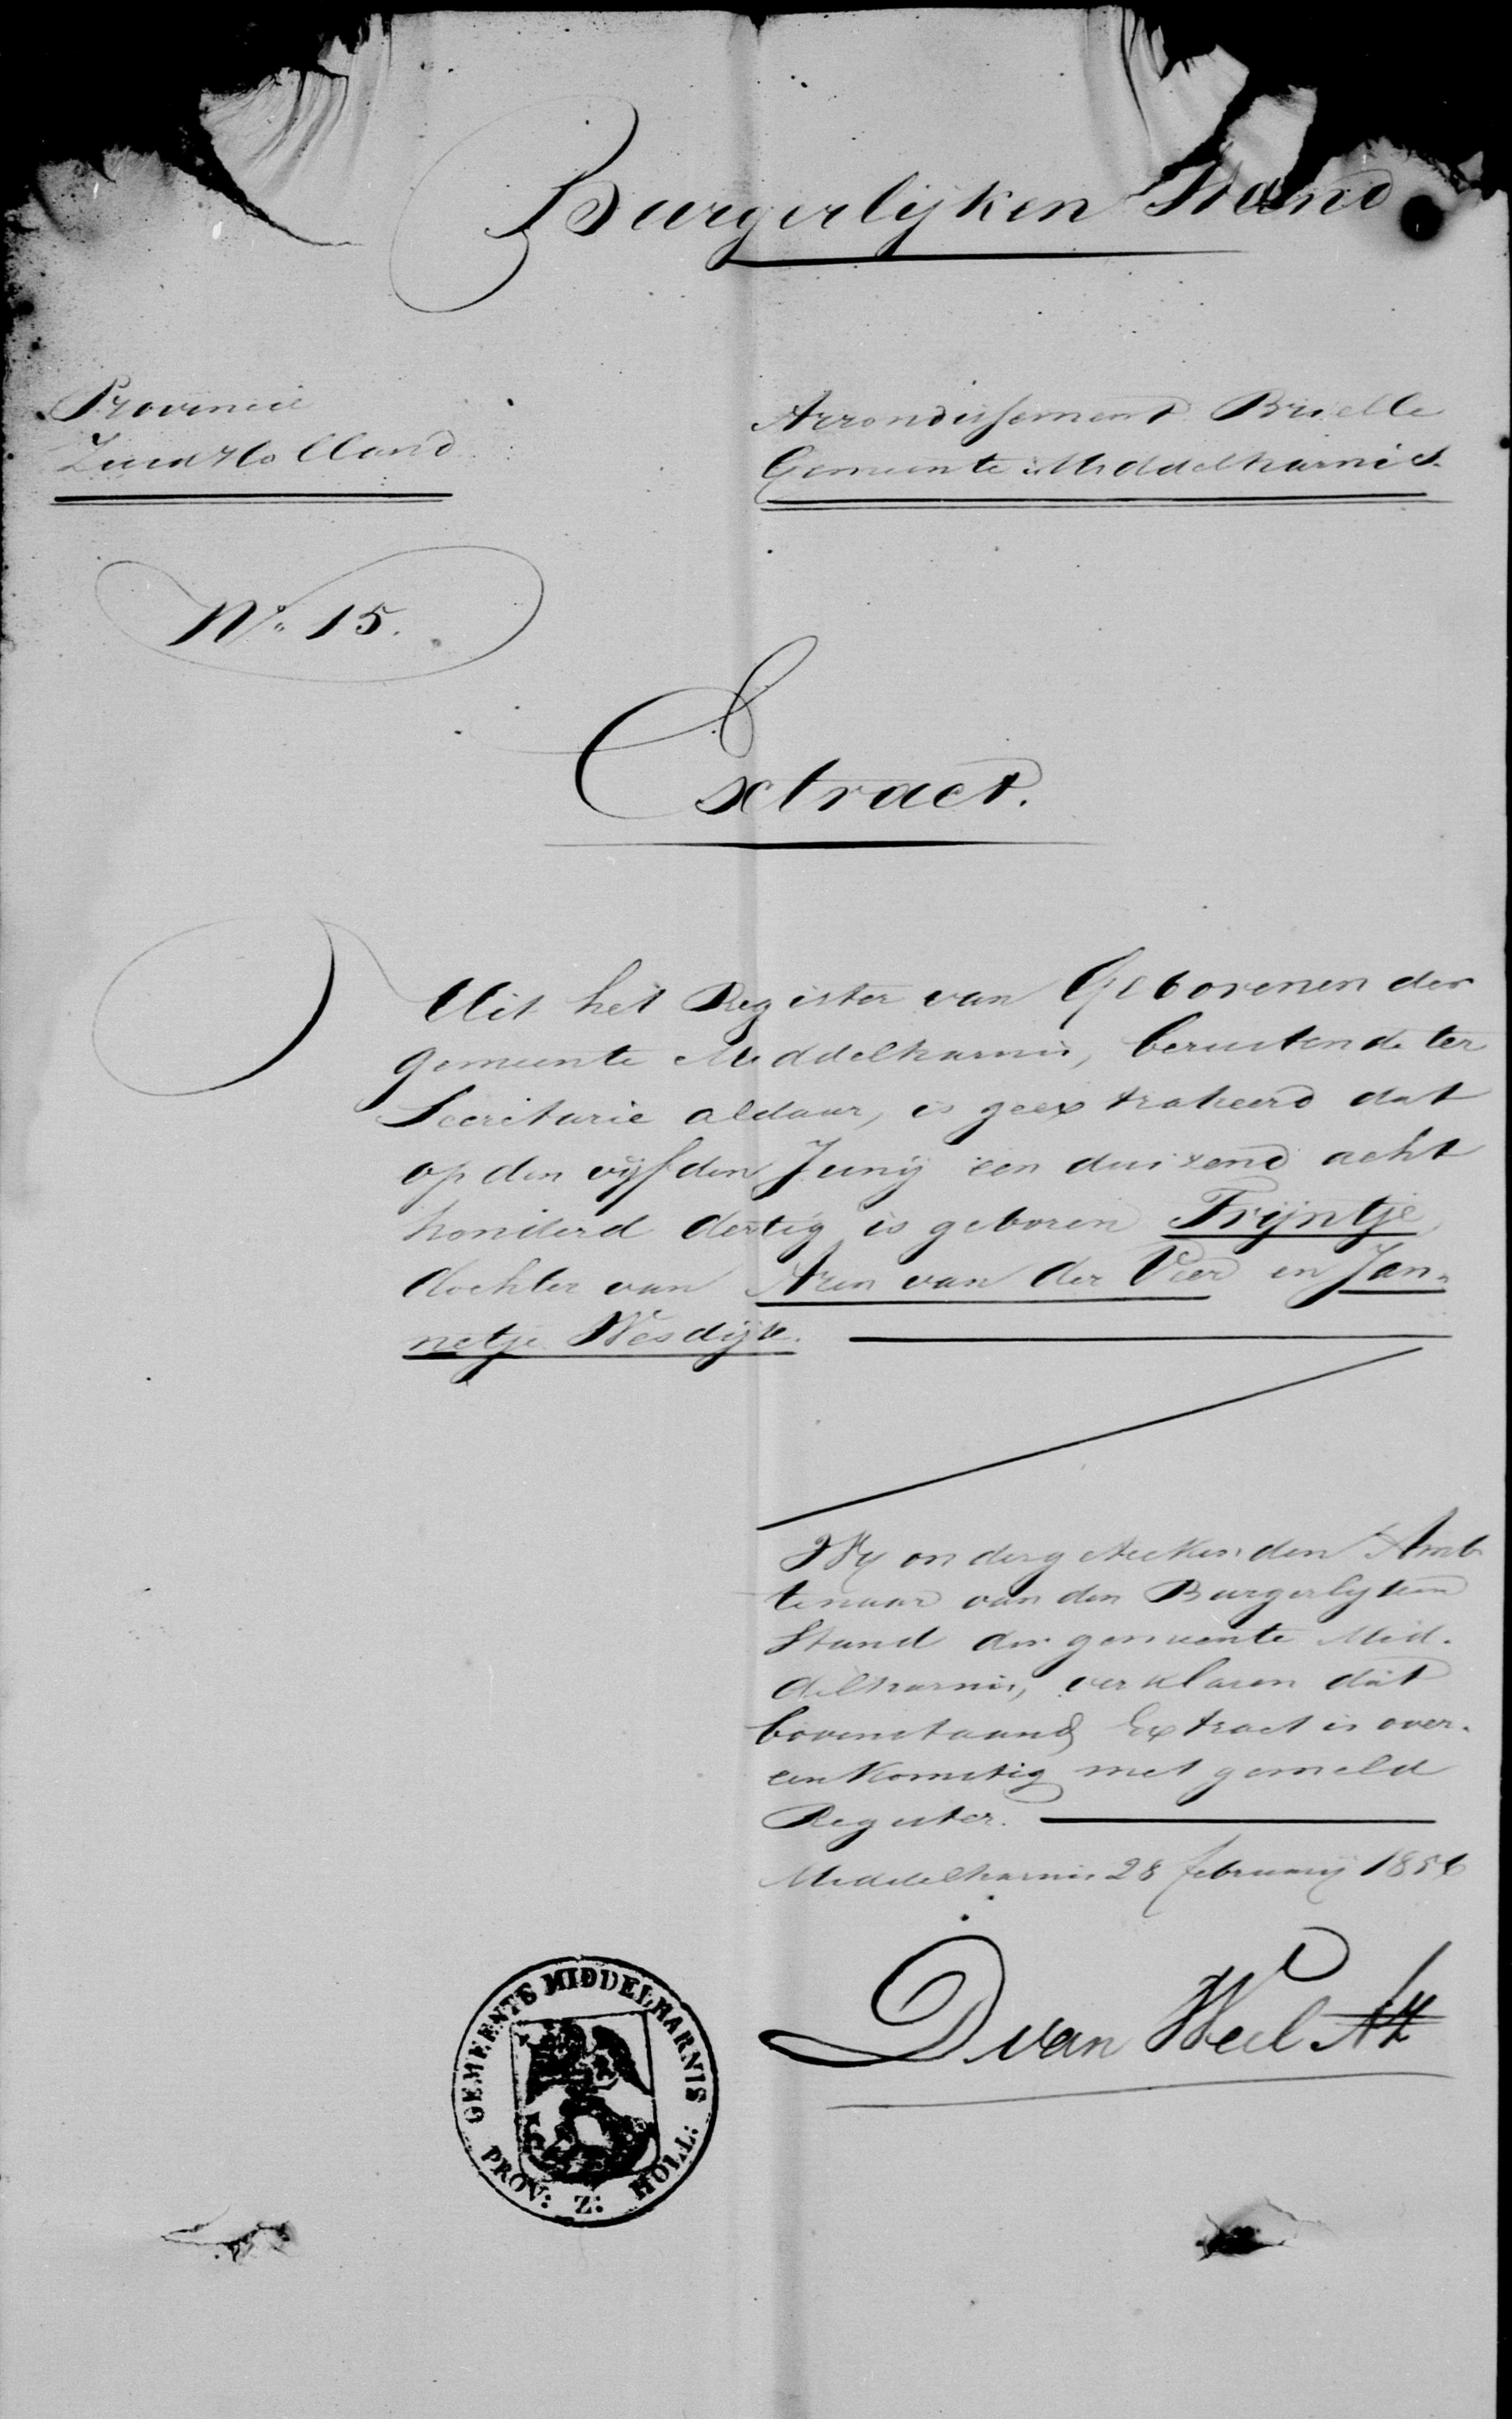  - Huwelijksbijlagen Eduard Eliza Francois van Nikkelen Kuijper en Trijntje van der Veer 28 februari 1856 (3)